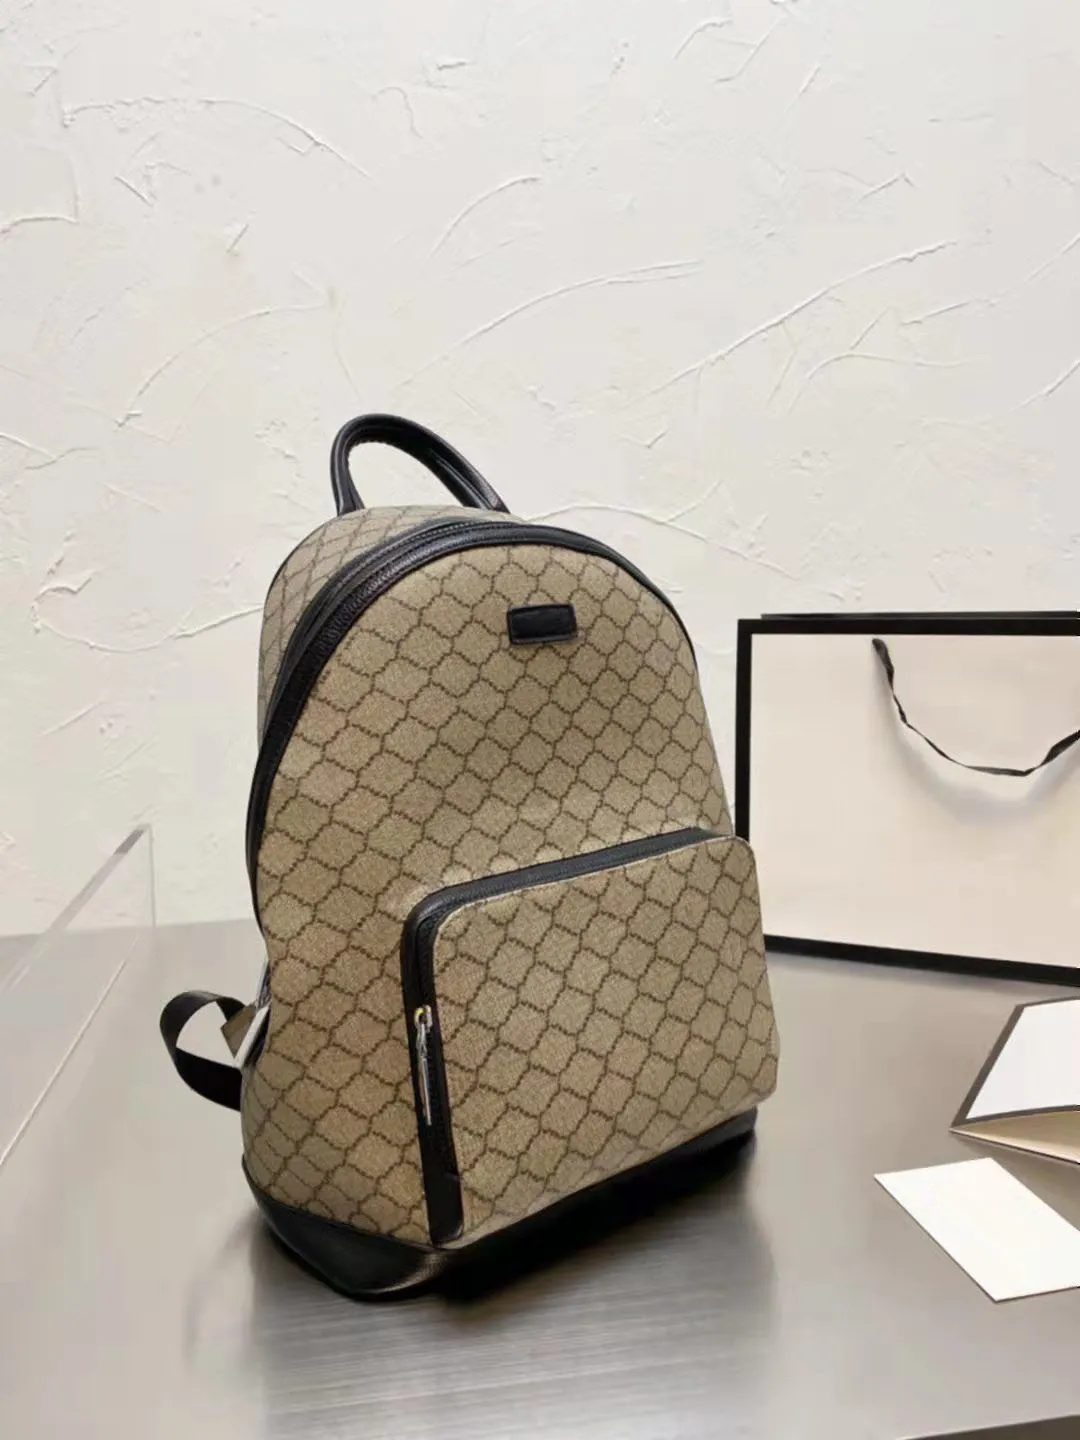 Designer fashion backpack computer bag fitness bag essential for travel.